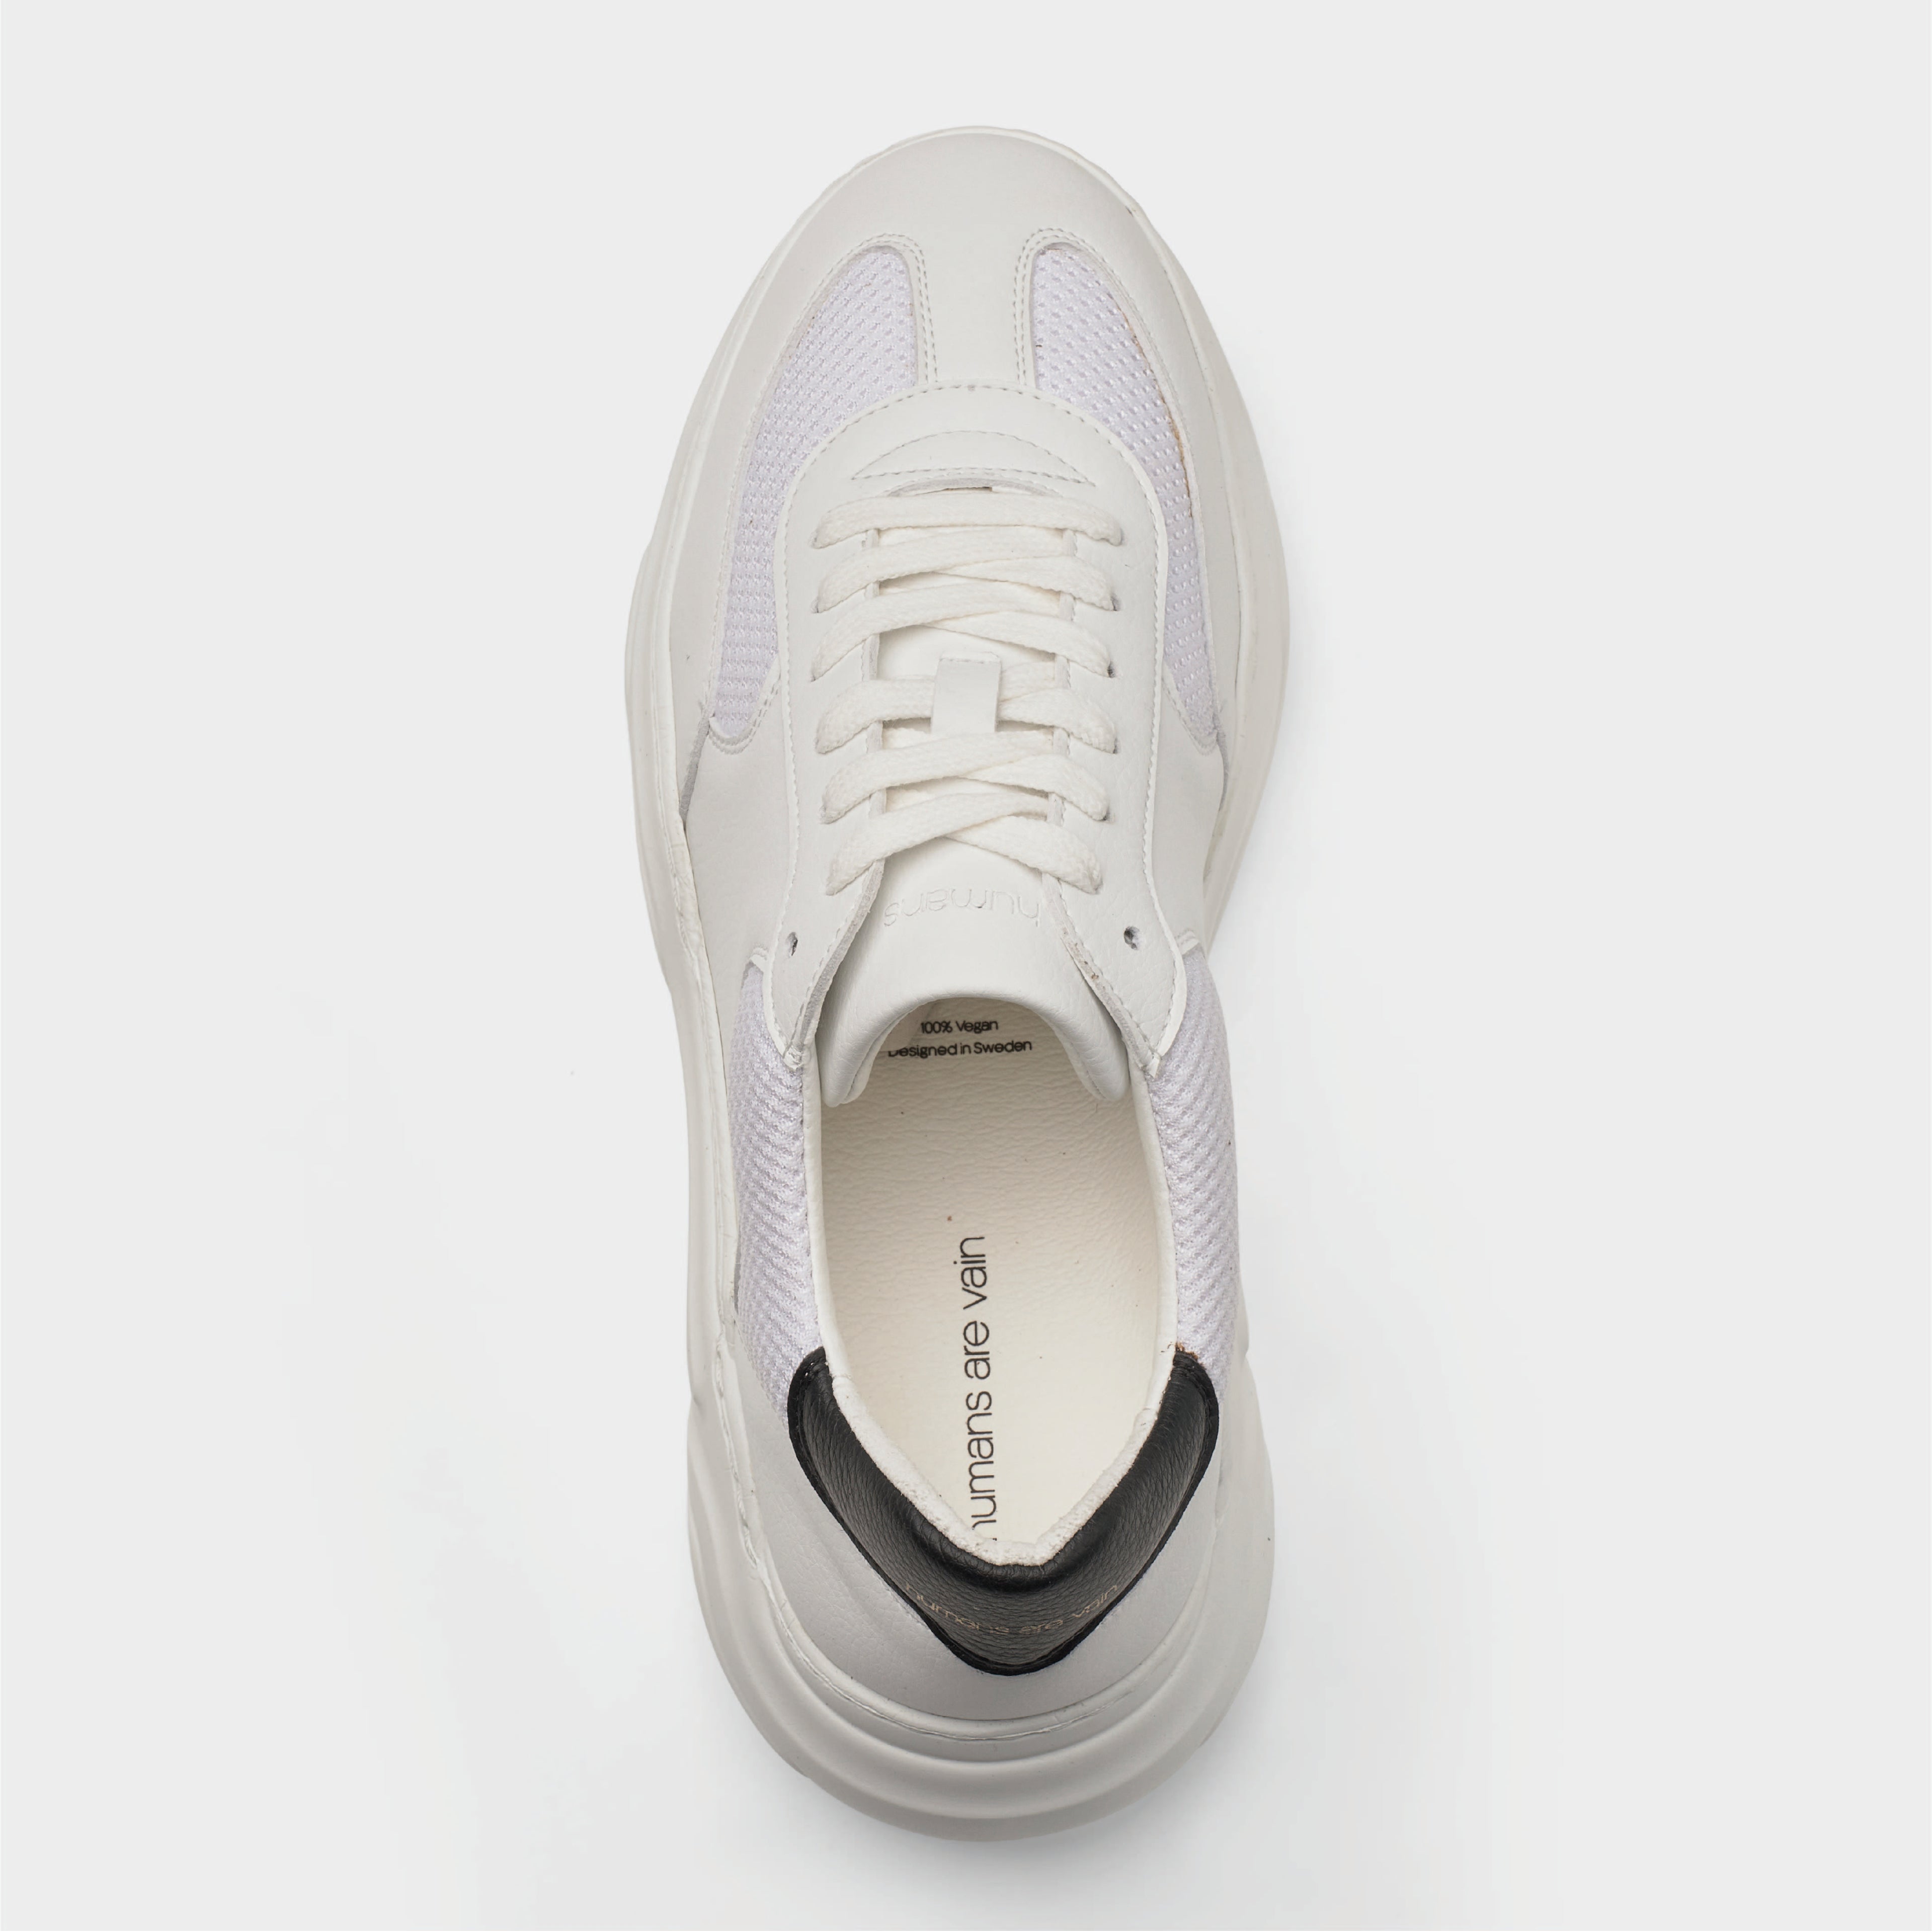 Evolution V2 Sustainable Sneaker White Top